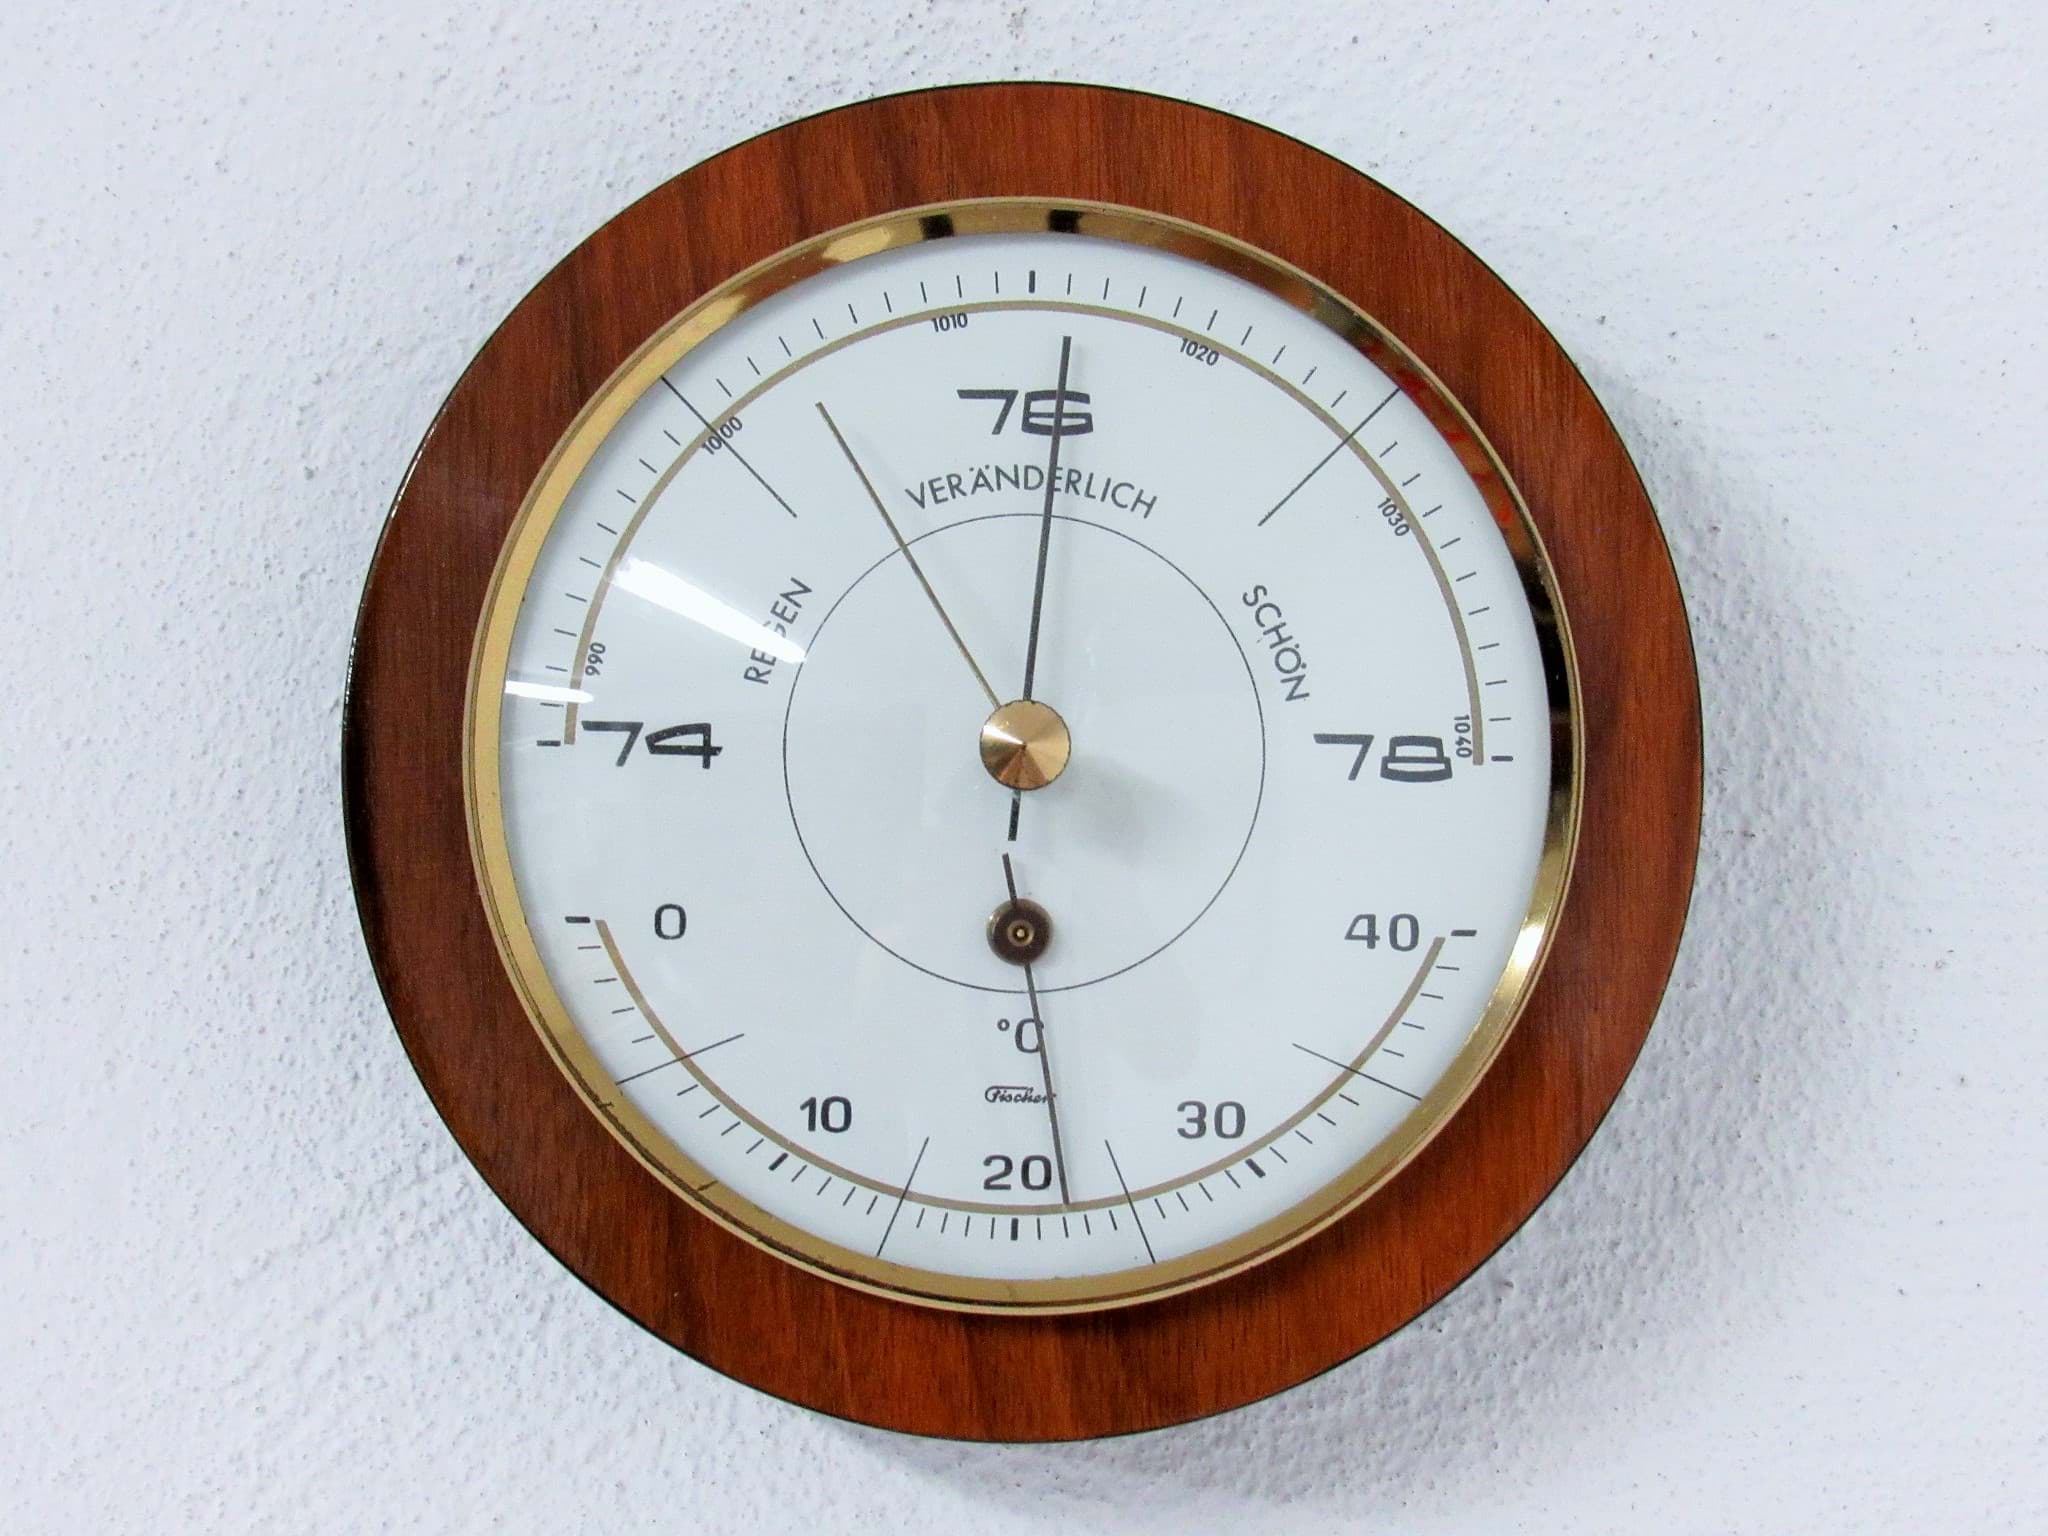 Obraz Runde Wetterstation mit Barometer & Thermometer um 1960/70, wohl Palisander Holz, Hersteller Fischer